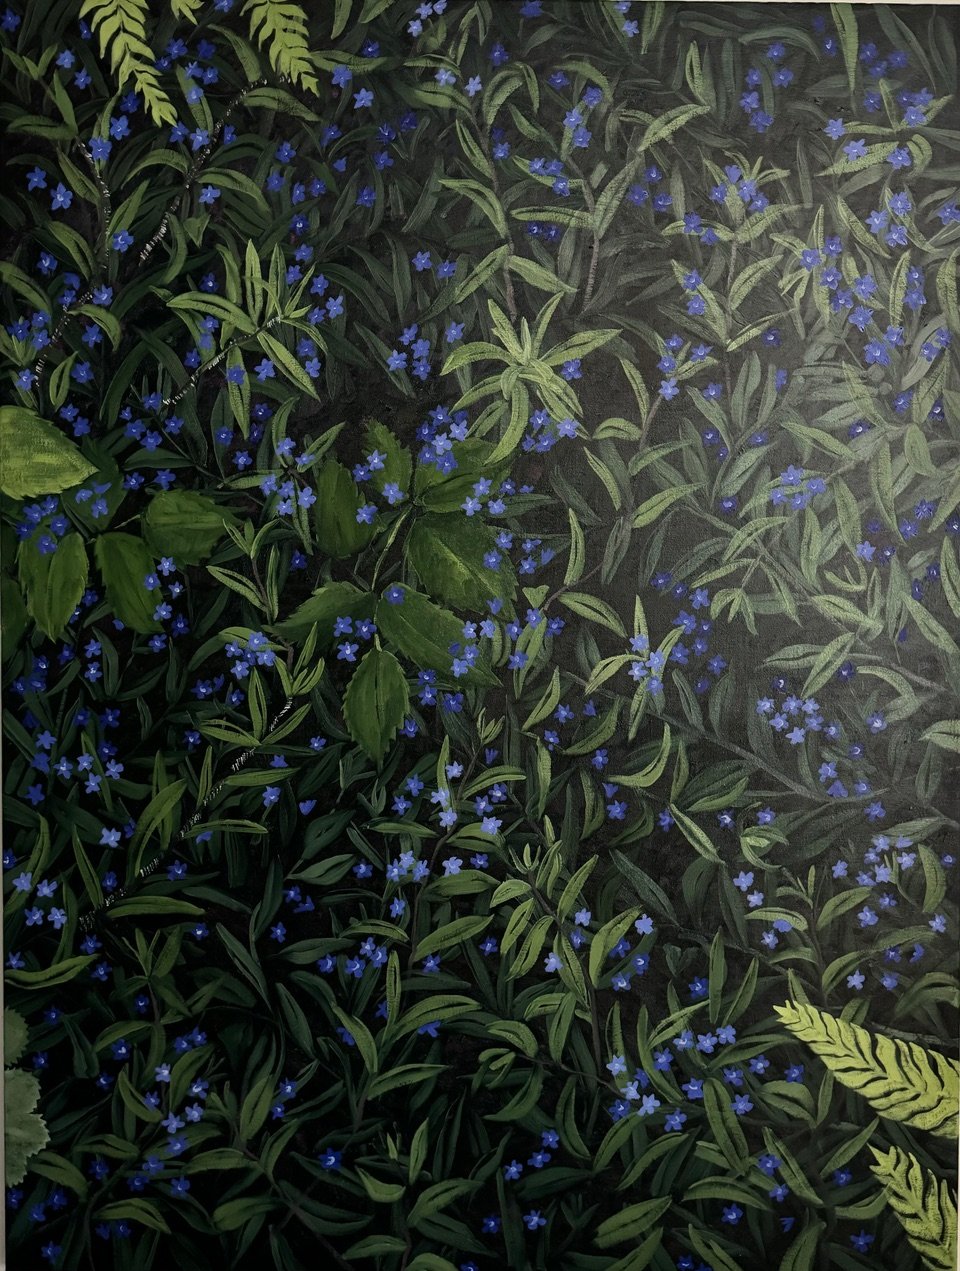 Nighttime in my blue garden (Buglossoides) 